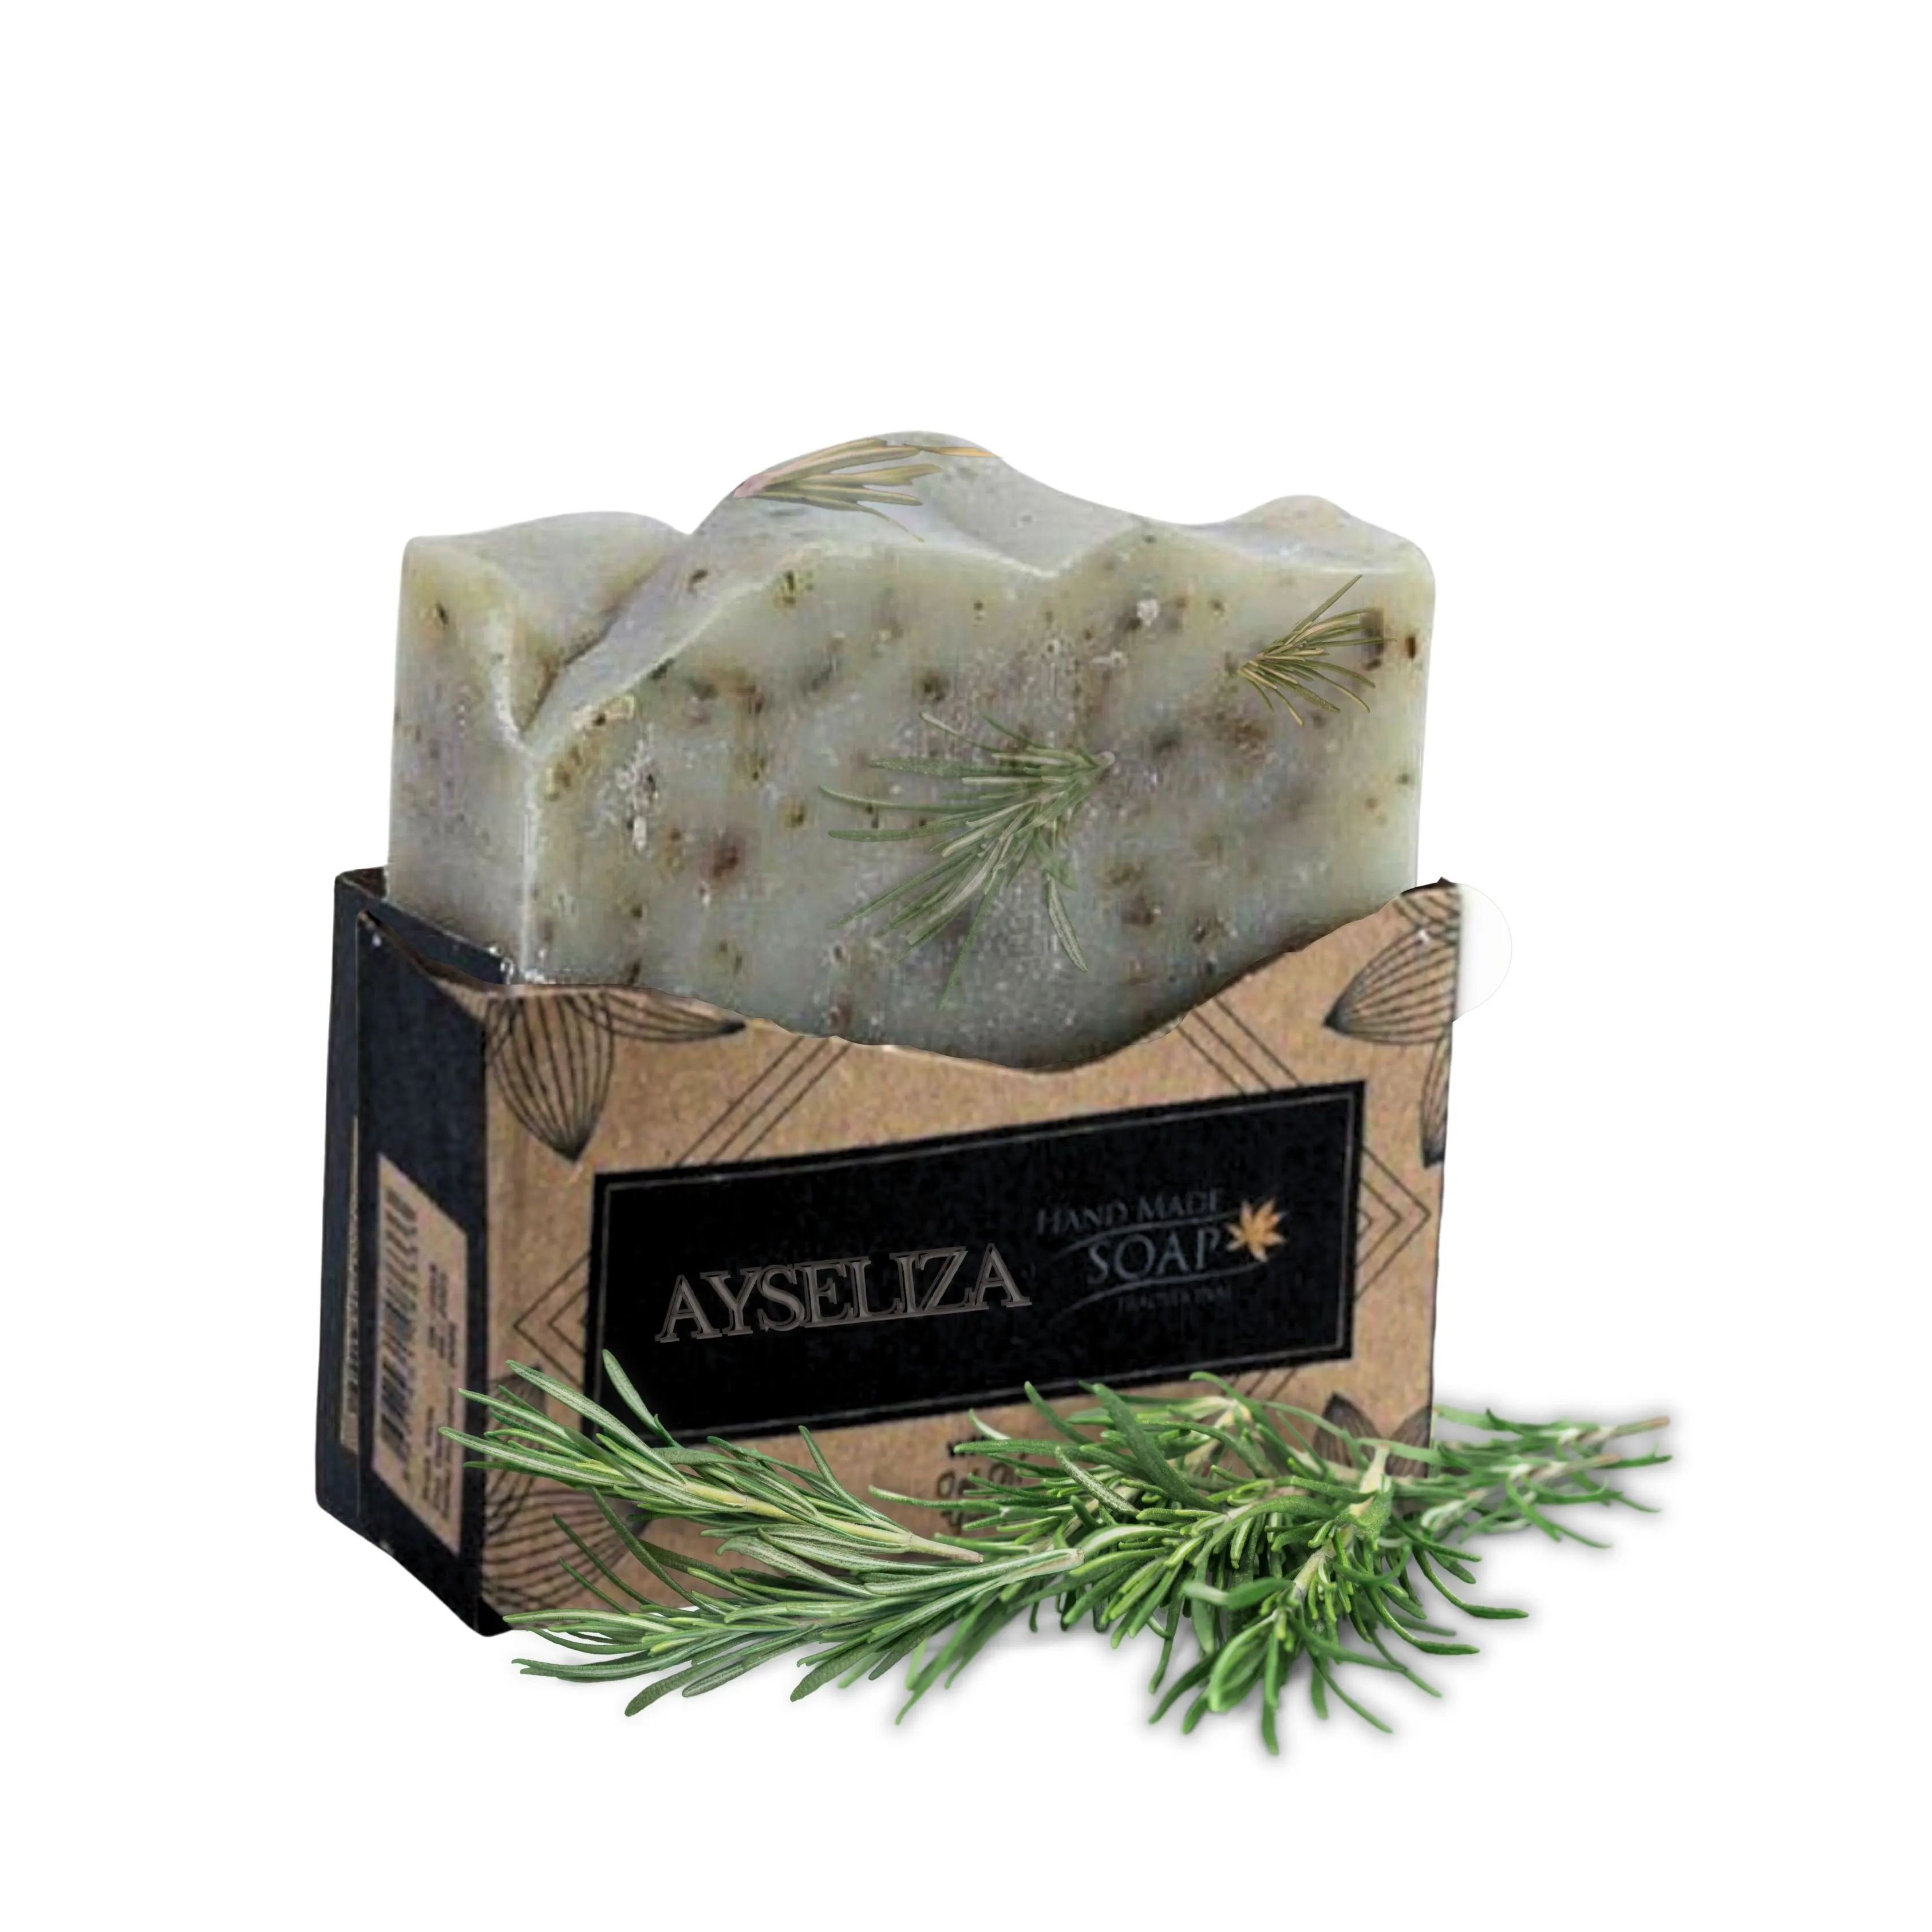 Ayseliza rosmarino artigianale a base di erbe toilette Logo personalizzabile Eco Friendly lavanderia sbiancante saponi organici naturali